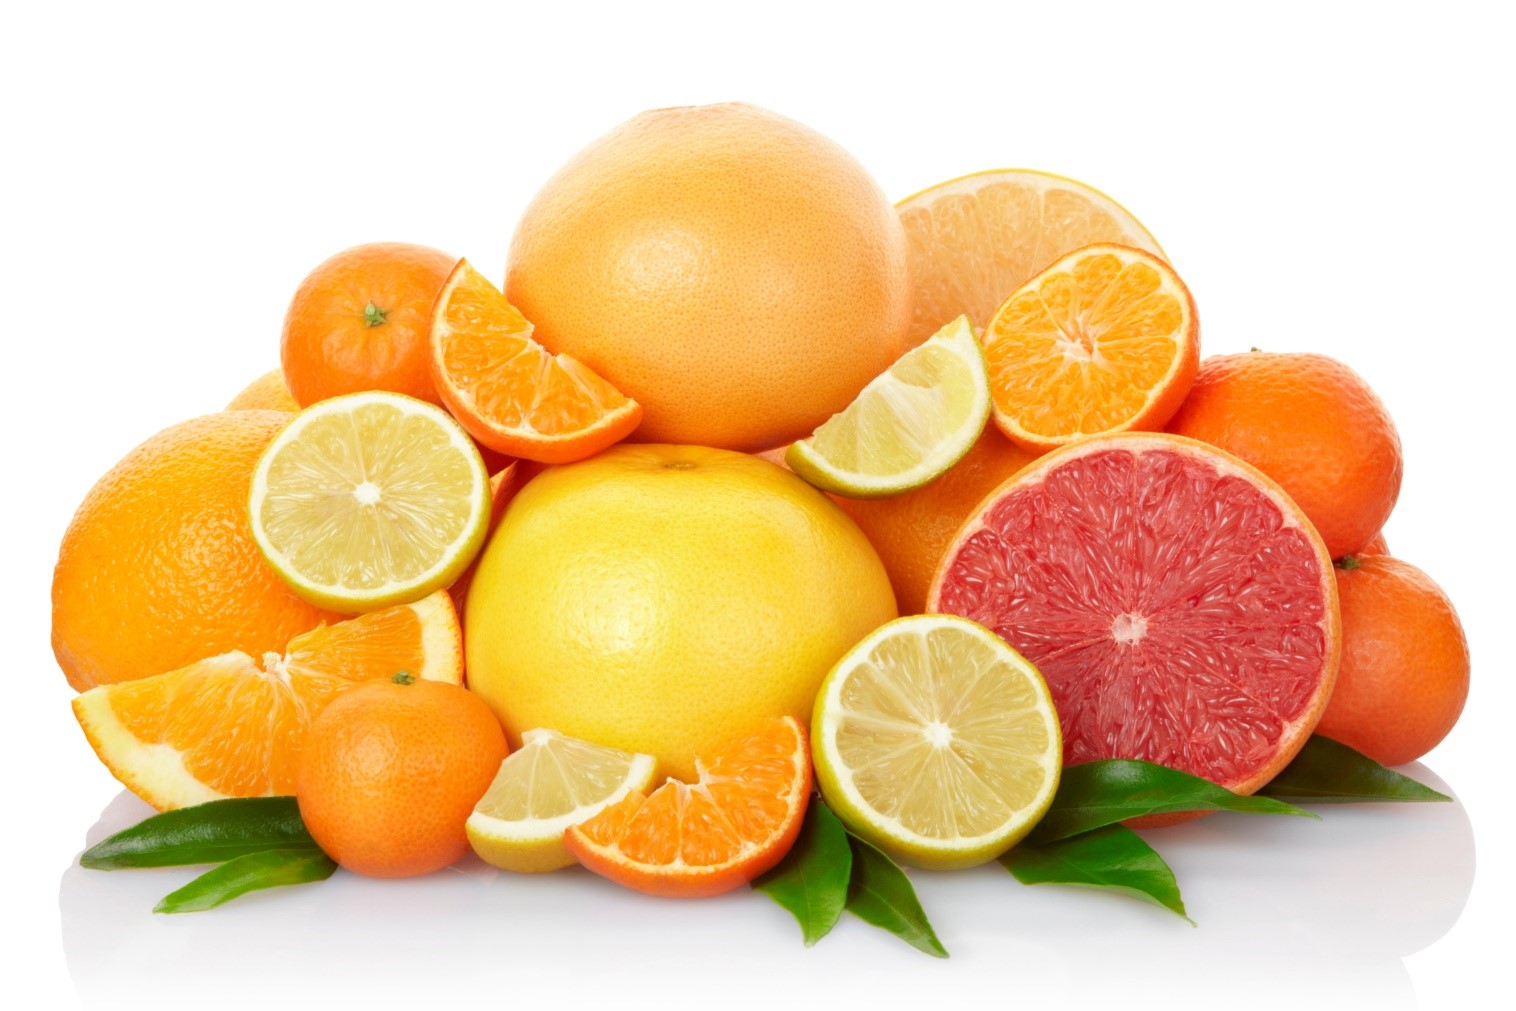 Cam chứa nhiều vitamin C giúp điều trị chứng hôi miệng | Nha khoa Tâm Như - Quận 10